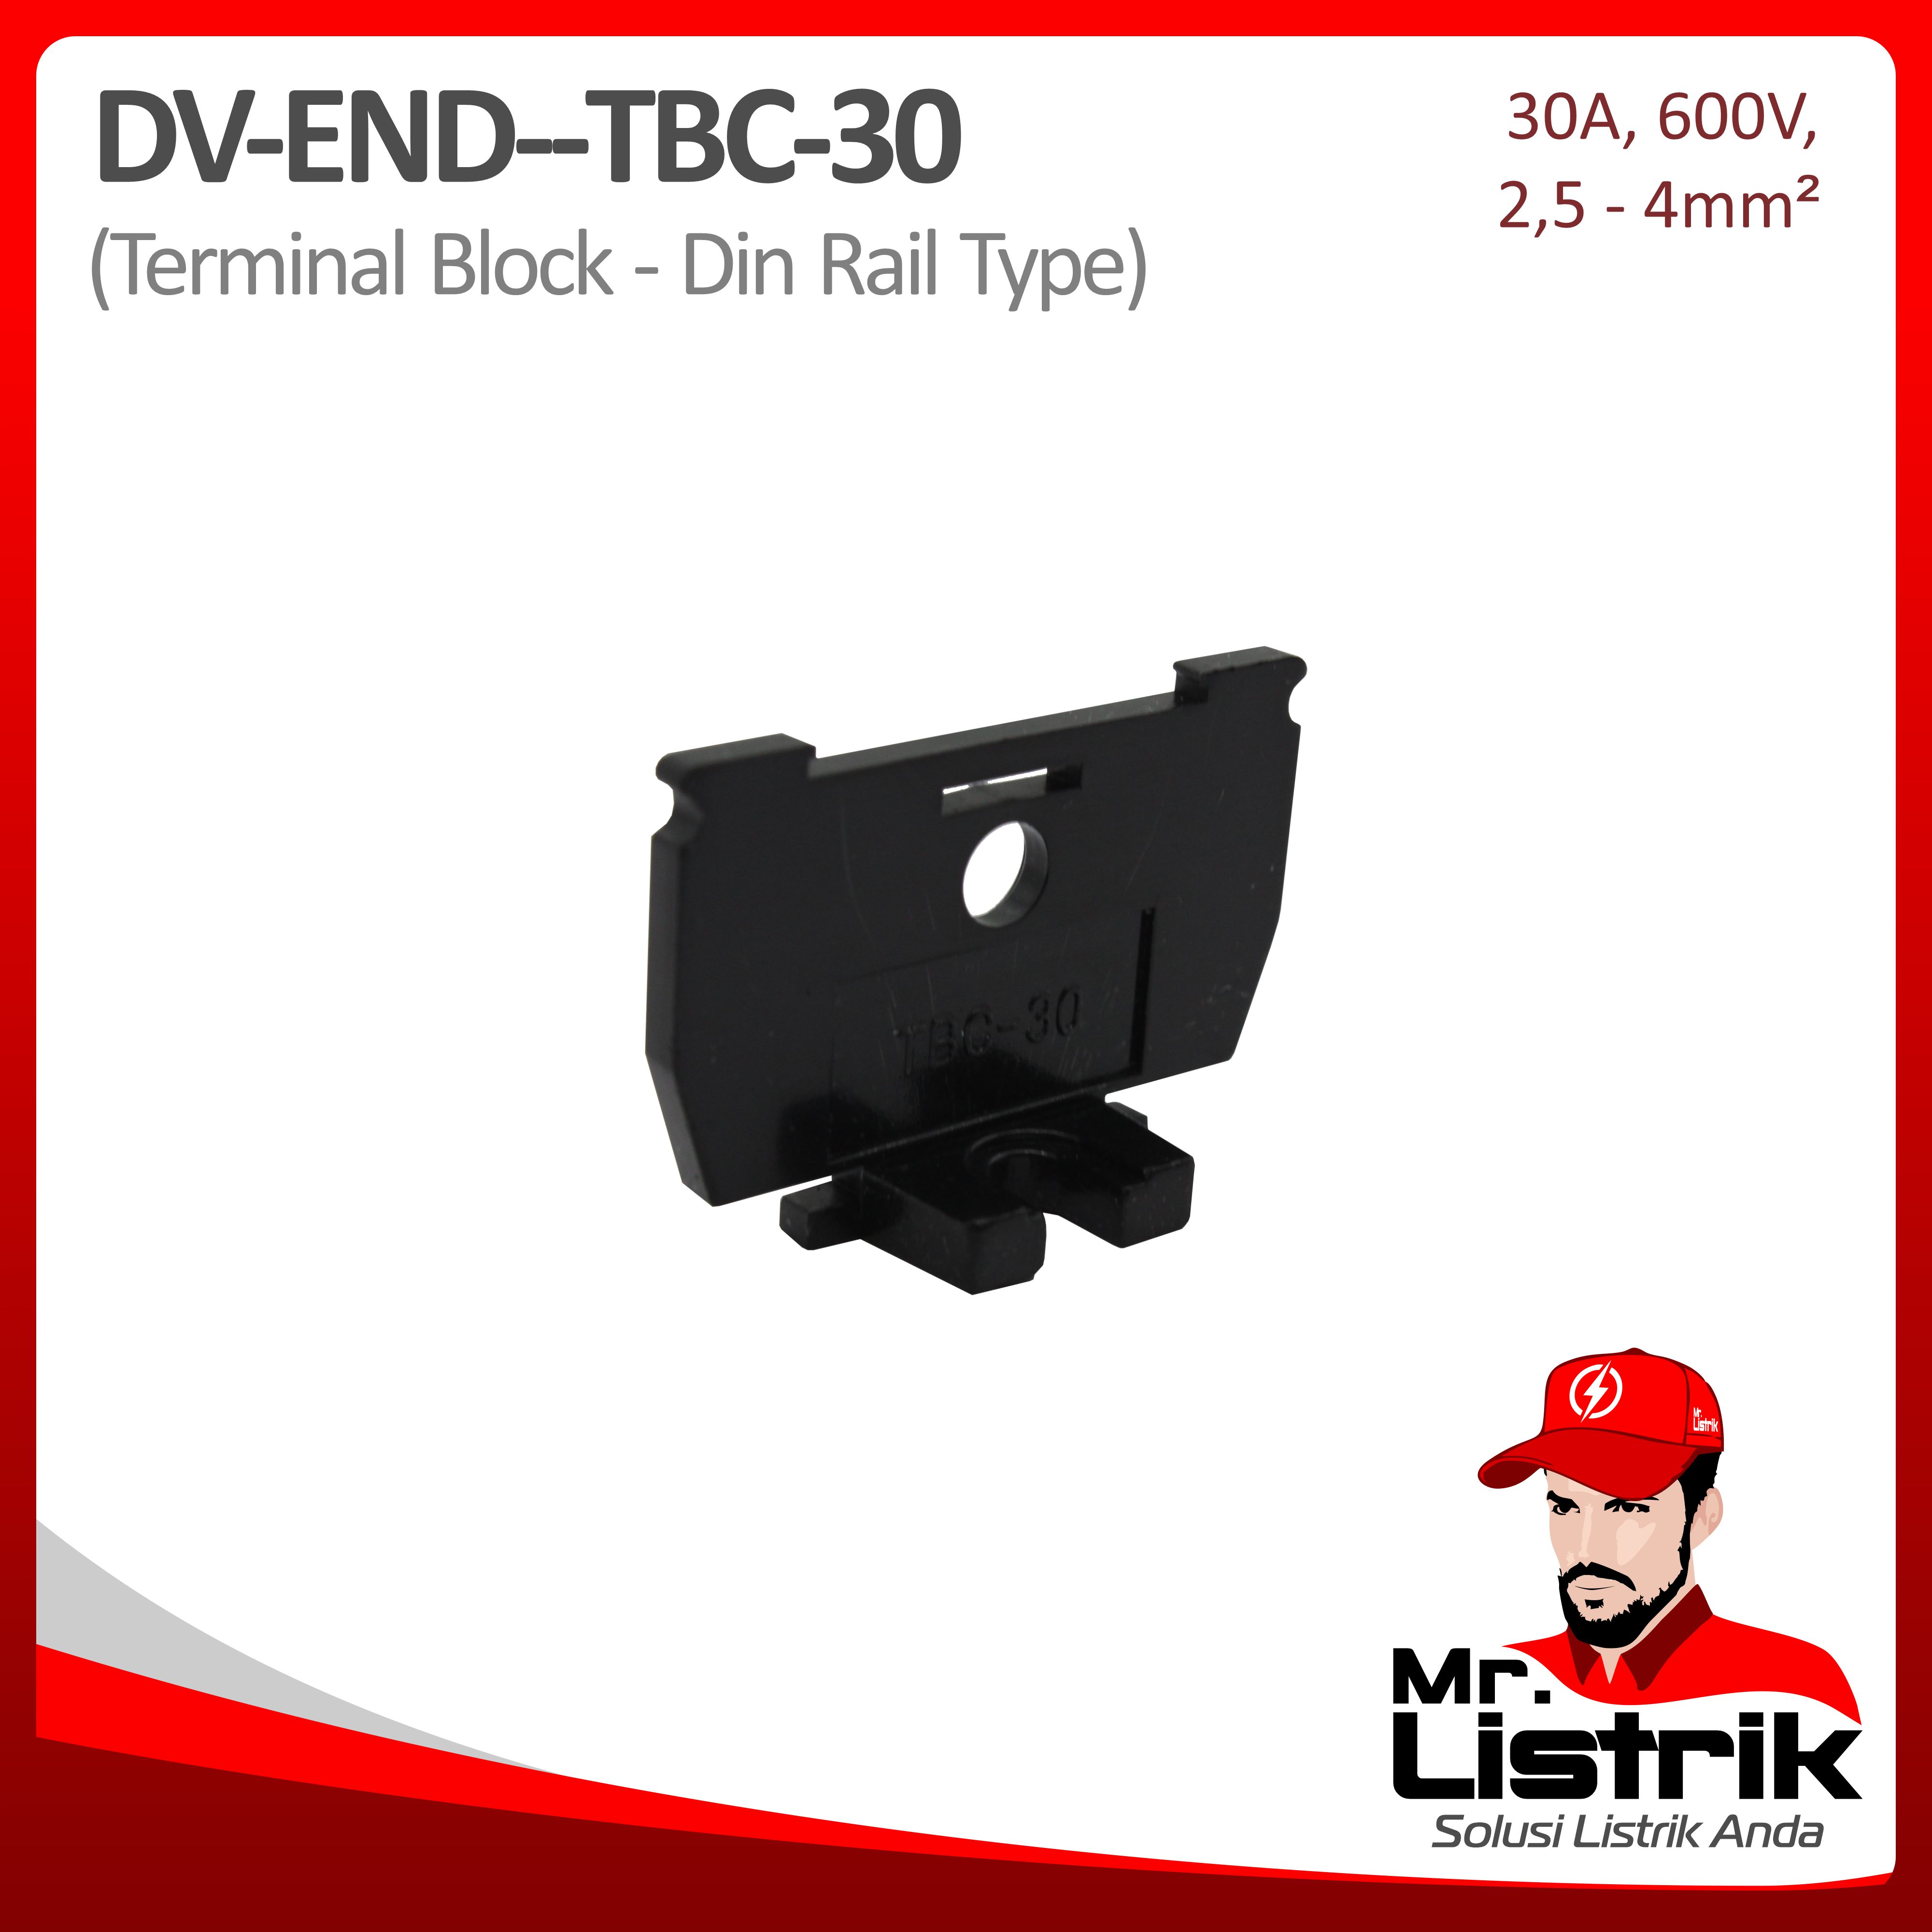 End Terminal Block TBC Series 30A DV End-TBC-30